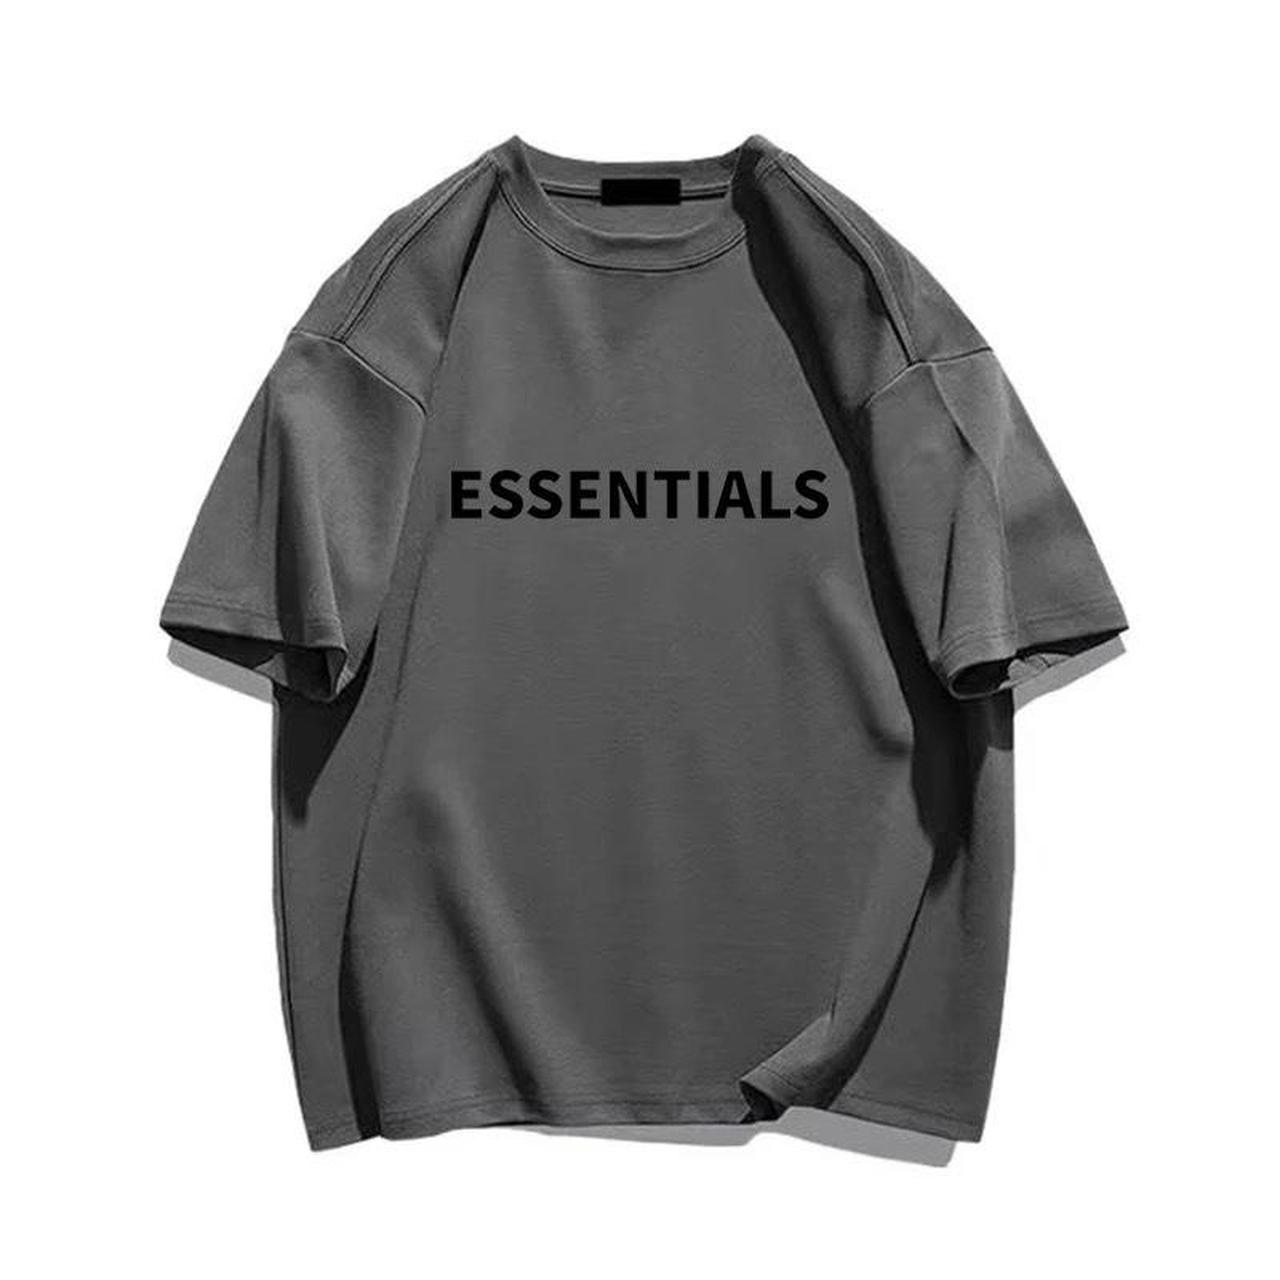 Summer Essentials T-Shirt Cotton Men's T-Shirt... - Depop